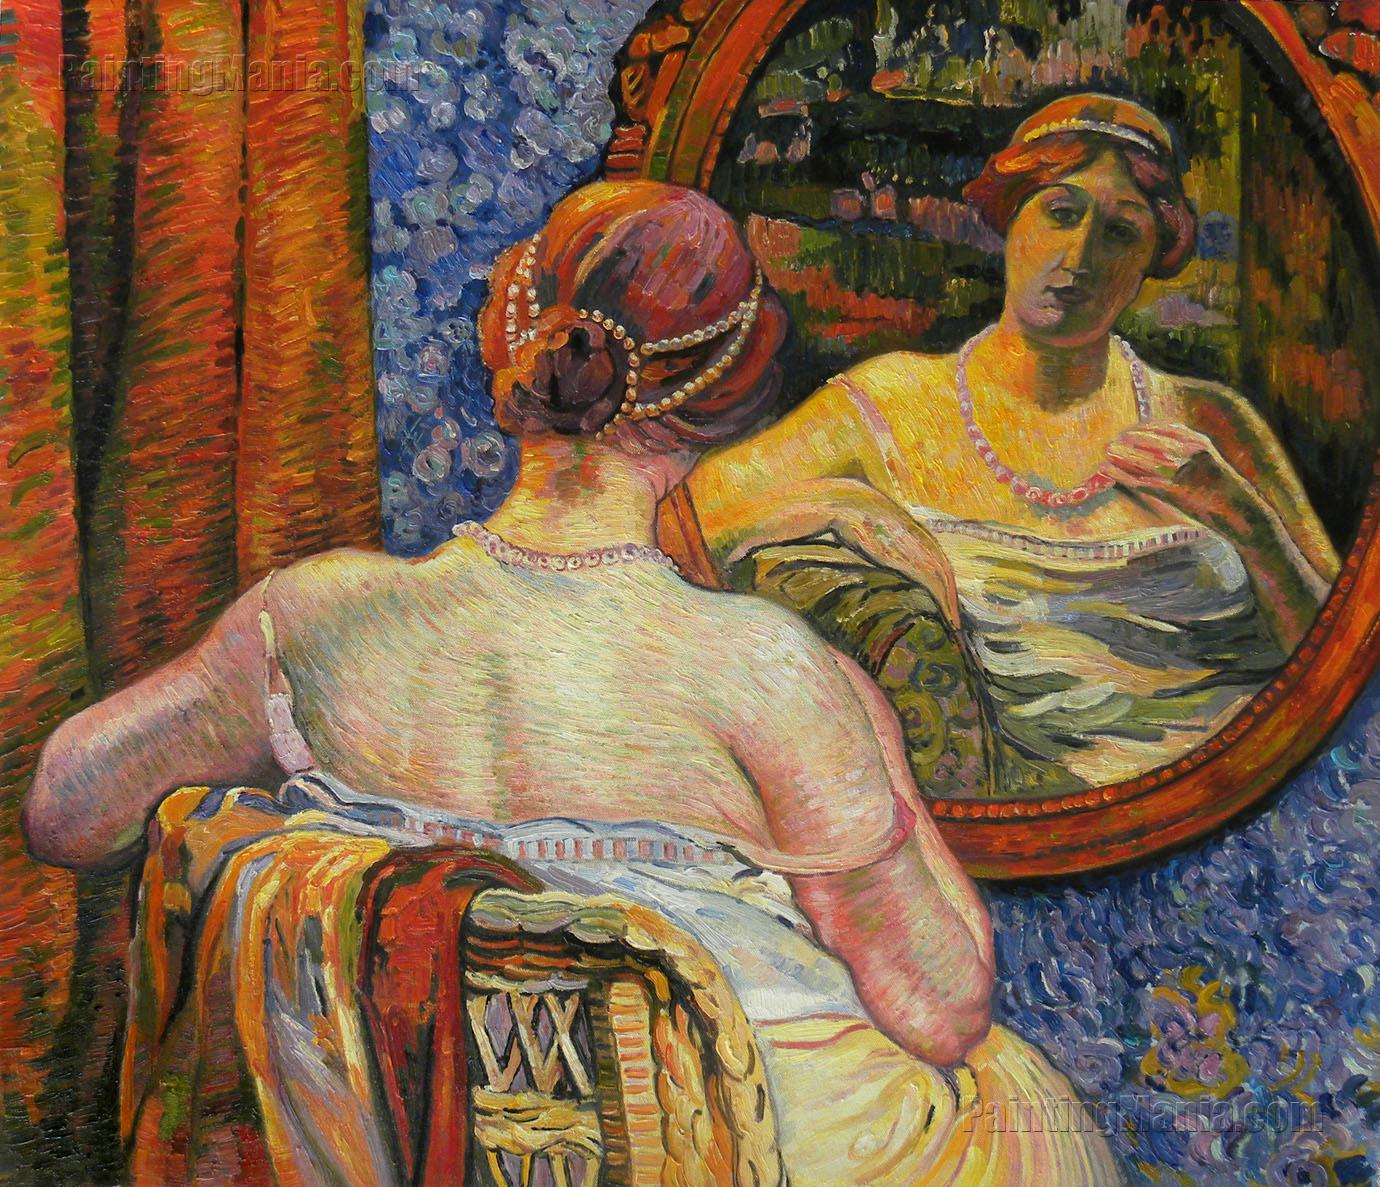 Woman at a Mirror